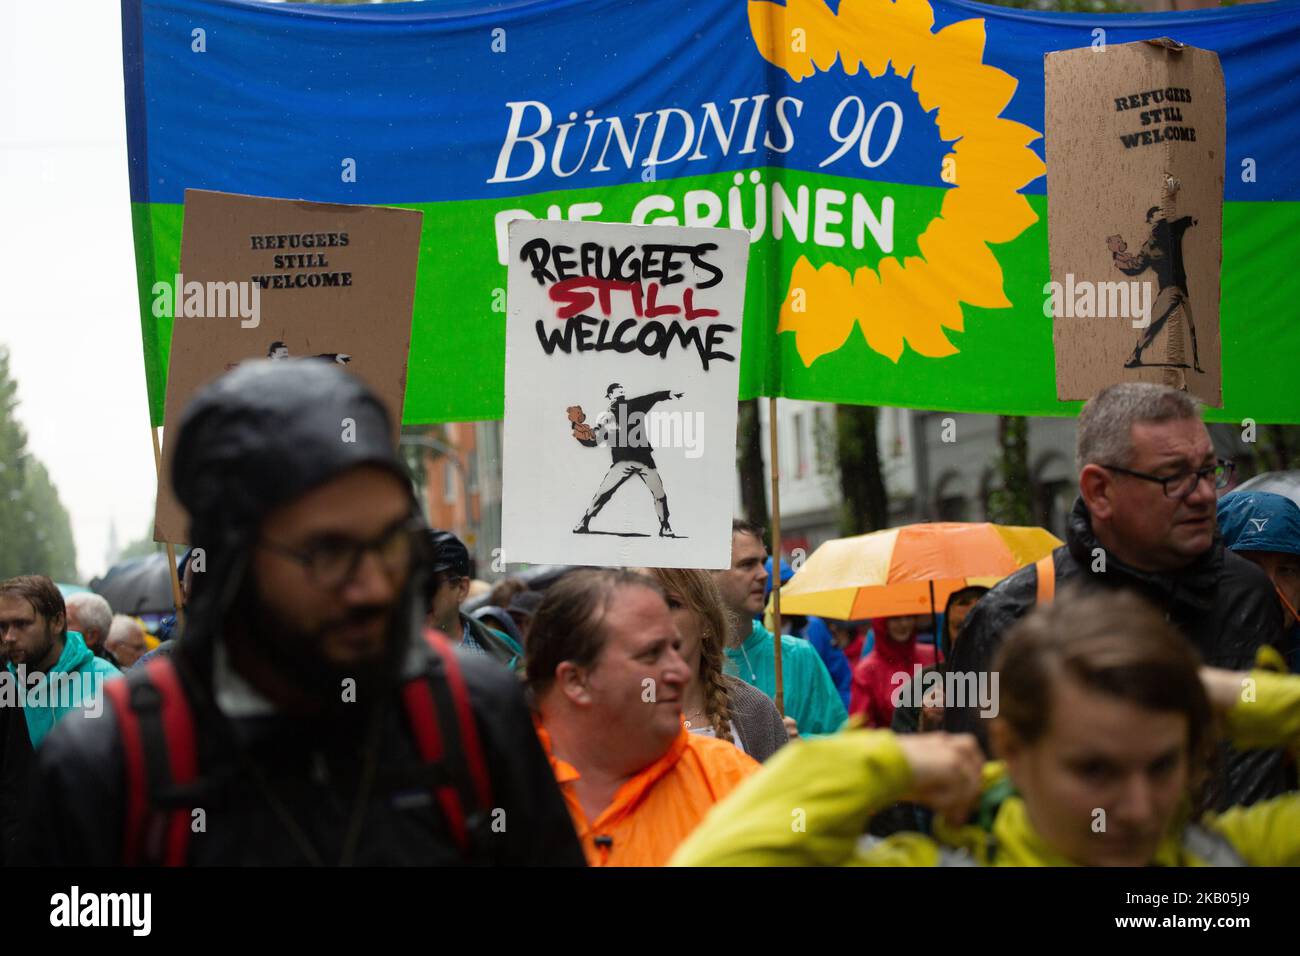 Des signes indiquant que les réfugiés sont toujours les bienvenus. Plusieurs dizaines de milliers de personnes ont manifesté à Munich, en Allemagne, le 22 juillet 2018 contre la politique du parti CSU. Il y avait différents thèmes principaux tels que les réfugiés et la guerre, la Polizeiaufgabengesetz bavaroise (PAG), LGBTI, les droits des queer et des femmes, les questions sociales telles que le logement et les droits au travail. (Photo par Alexander Pohl/NurPhoto) Banque D'Images